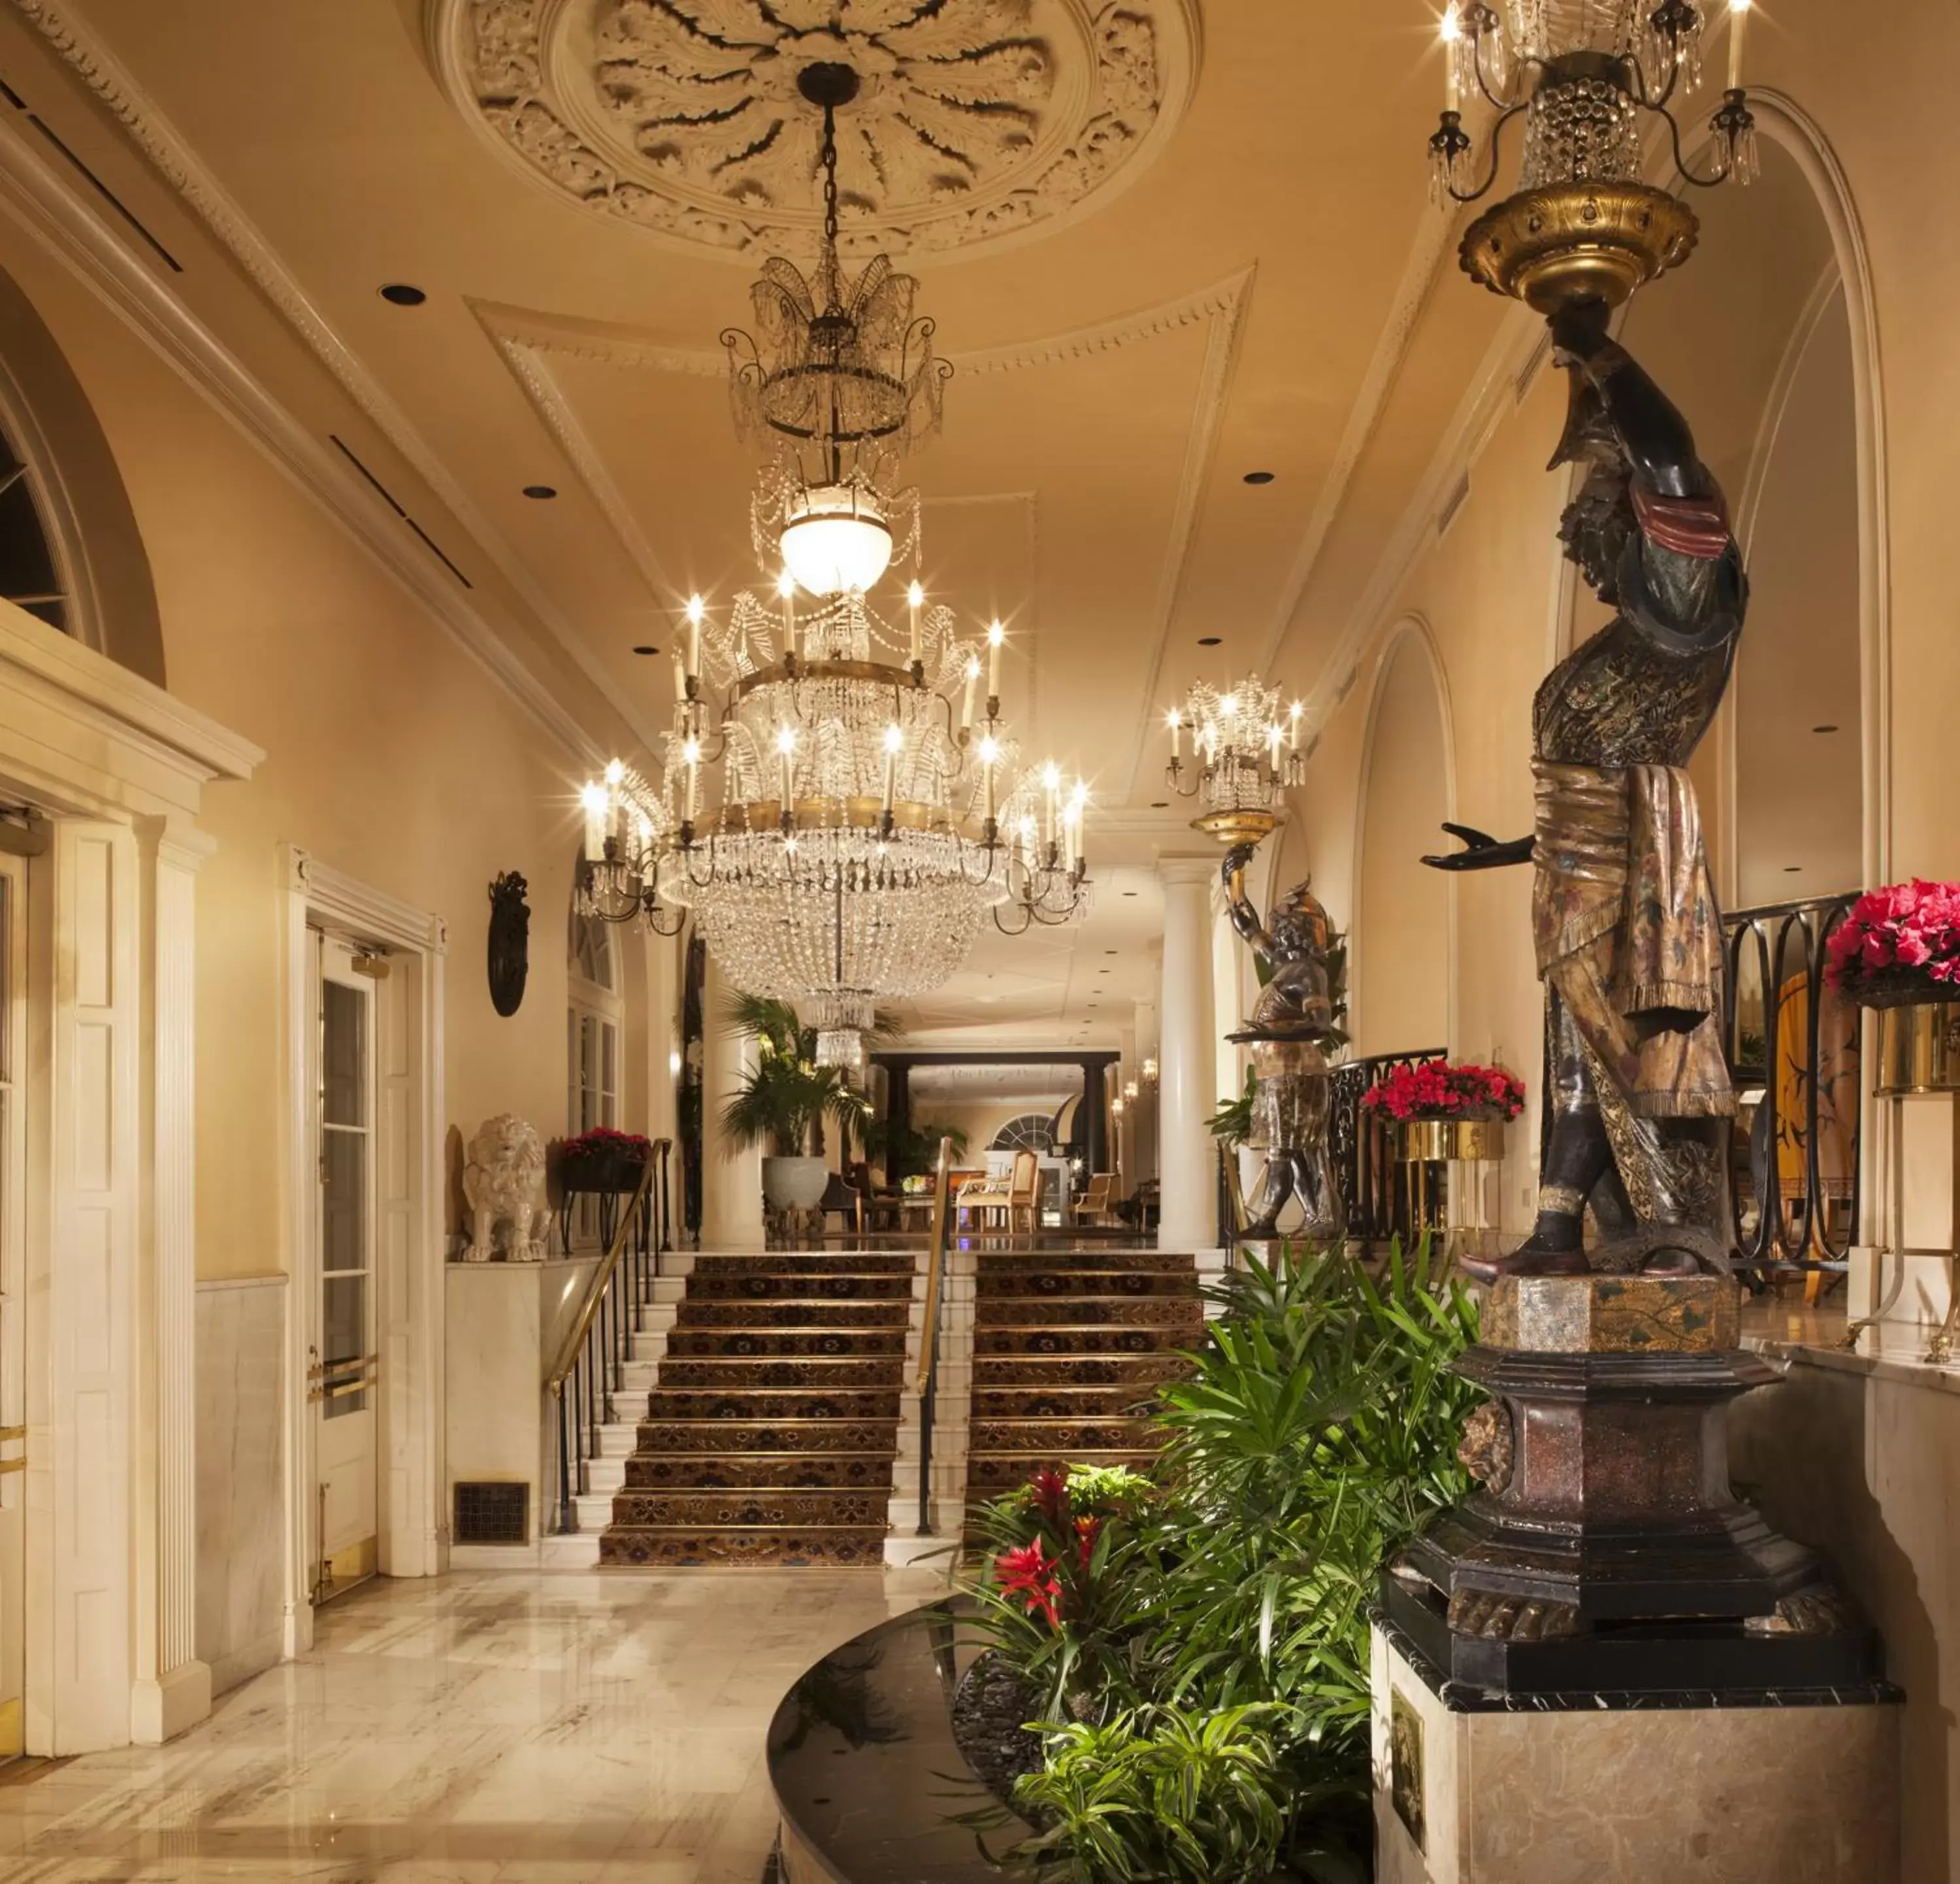 Lobby or reception, Lobby/Reception in Omni Royal Orleans Hotel